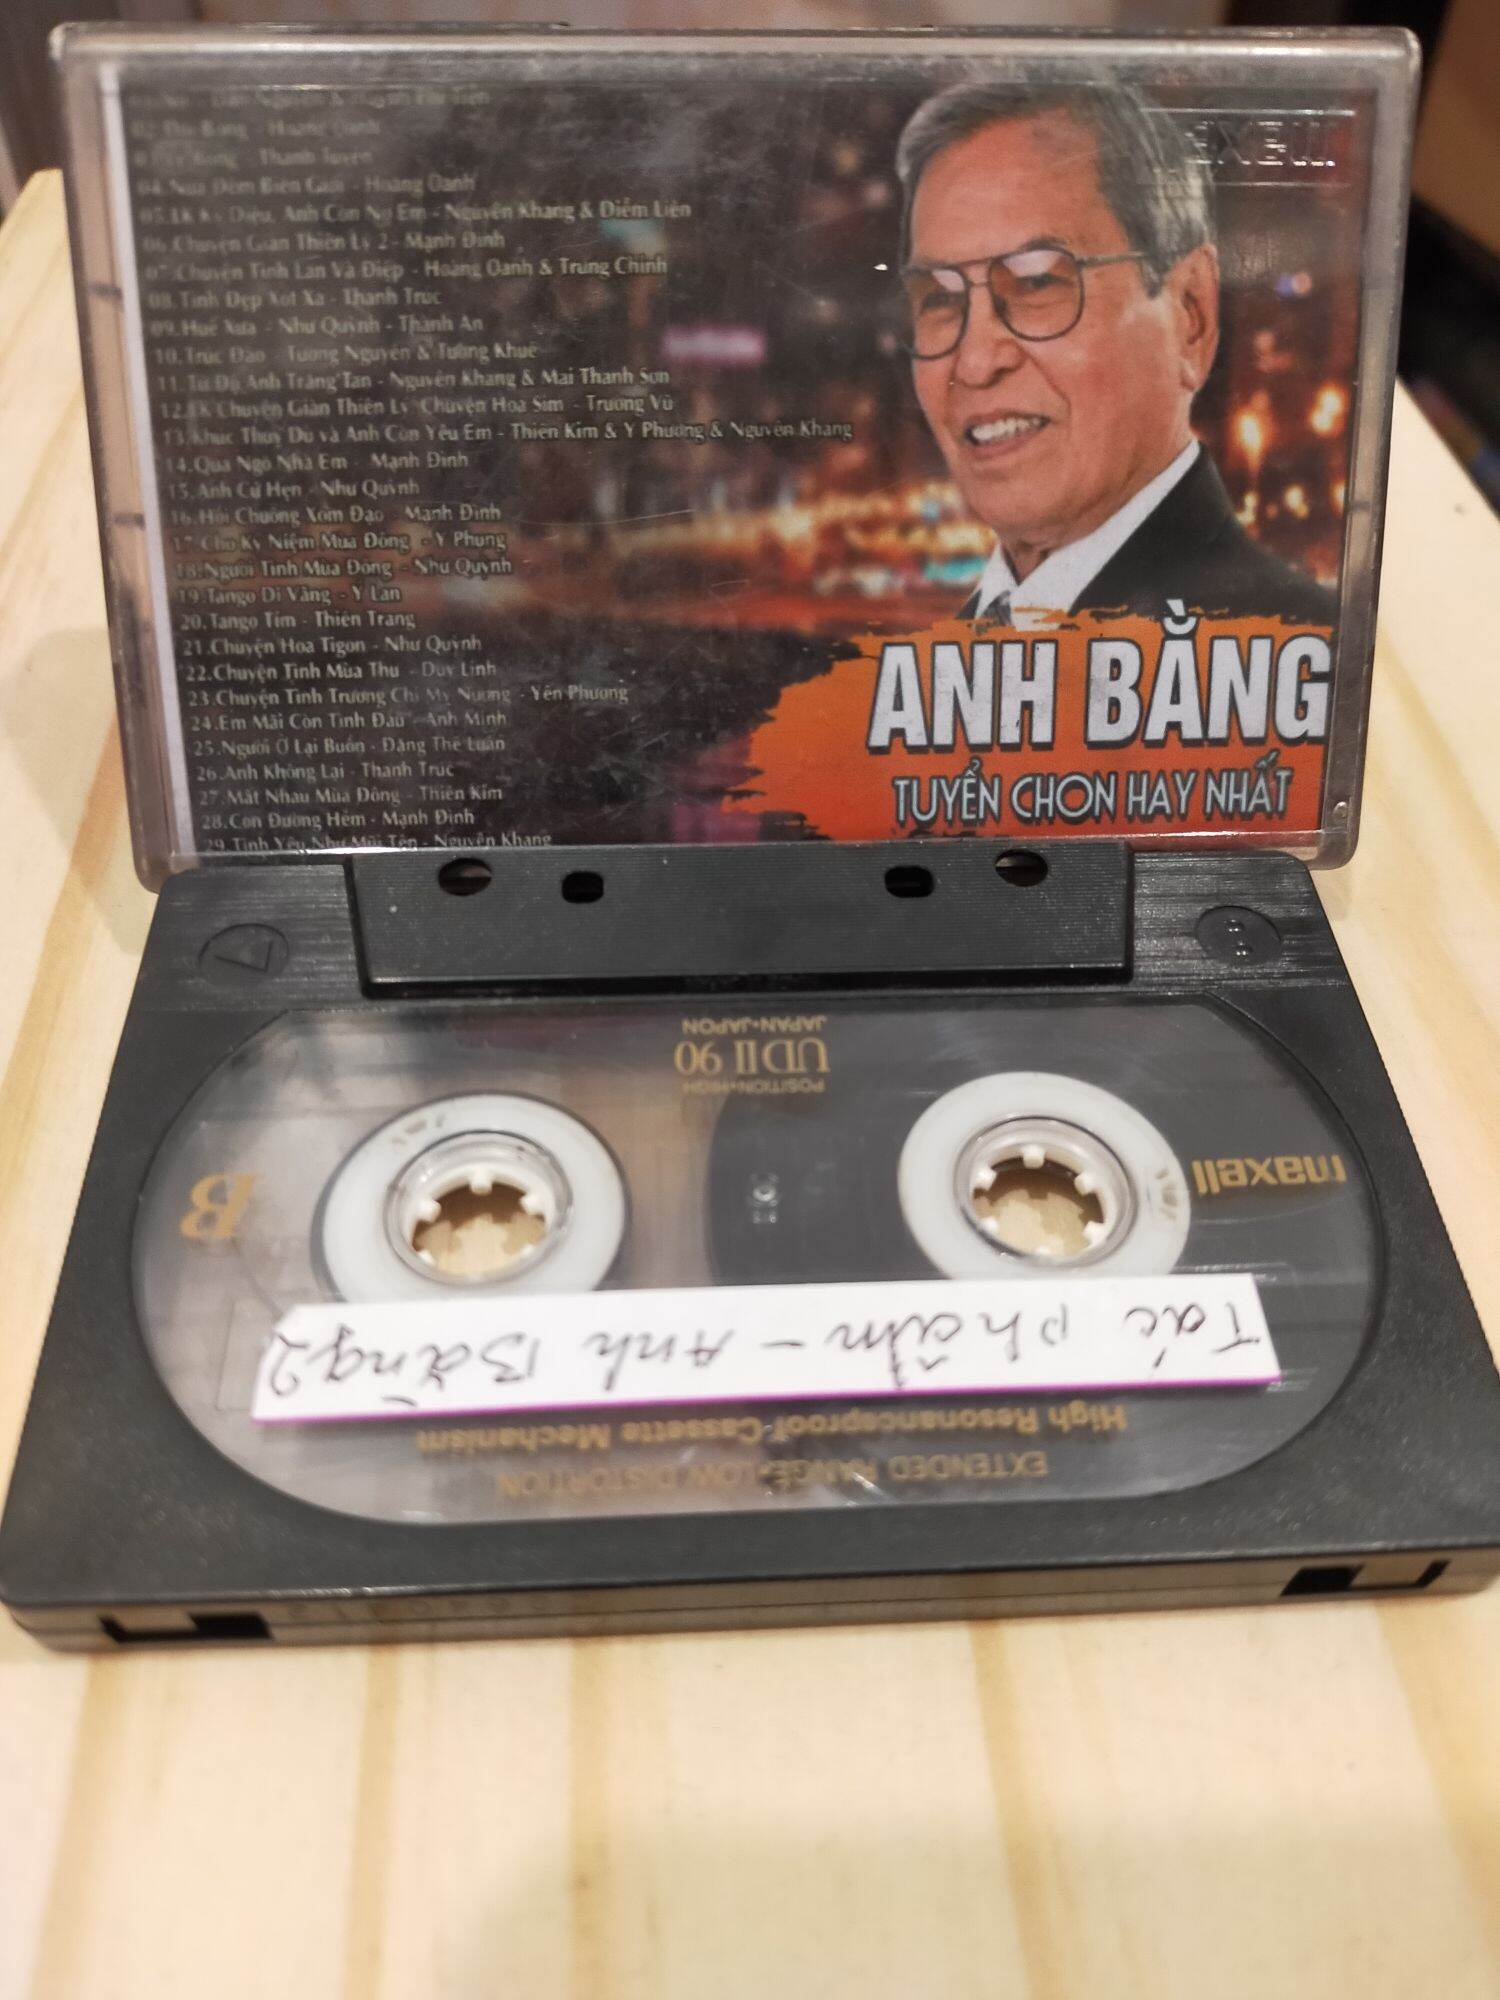 1 băng cassette Maxell UD2 tình khúc anh bằng( lưu ý: đây là băng cũ